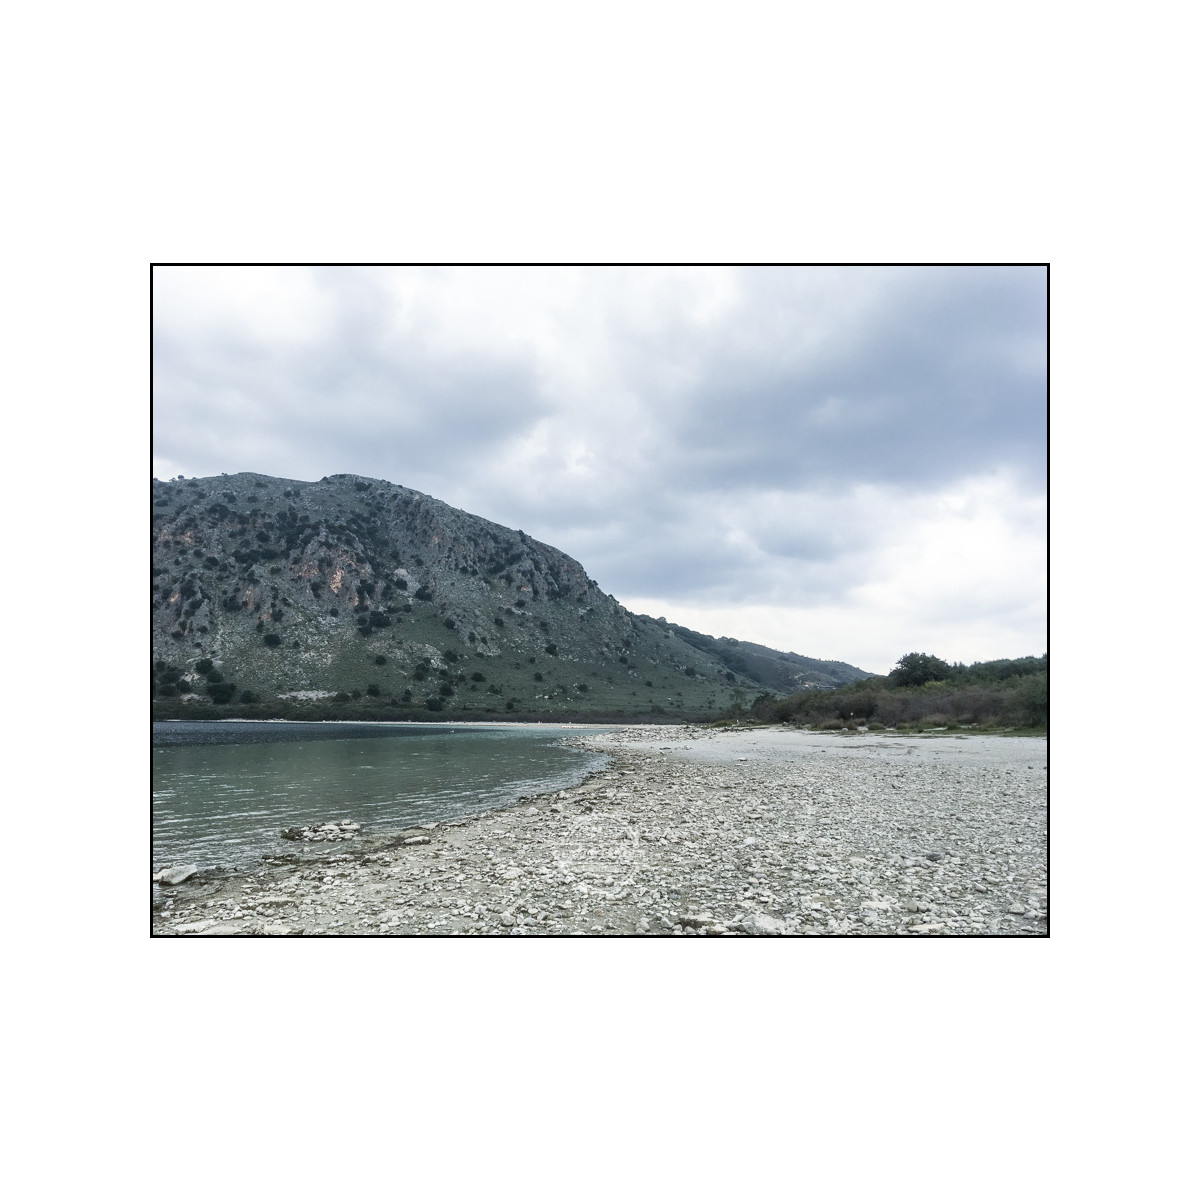 20181115 Kreta by iPhone SE © Gerald Langer 54 - Gerald Langer